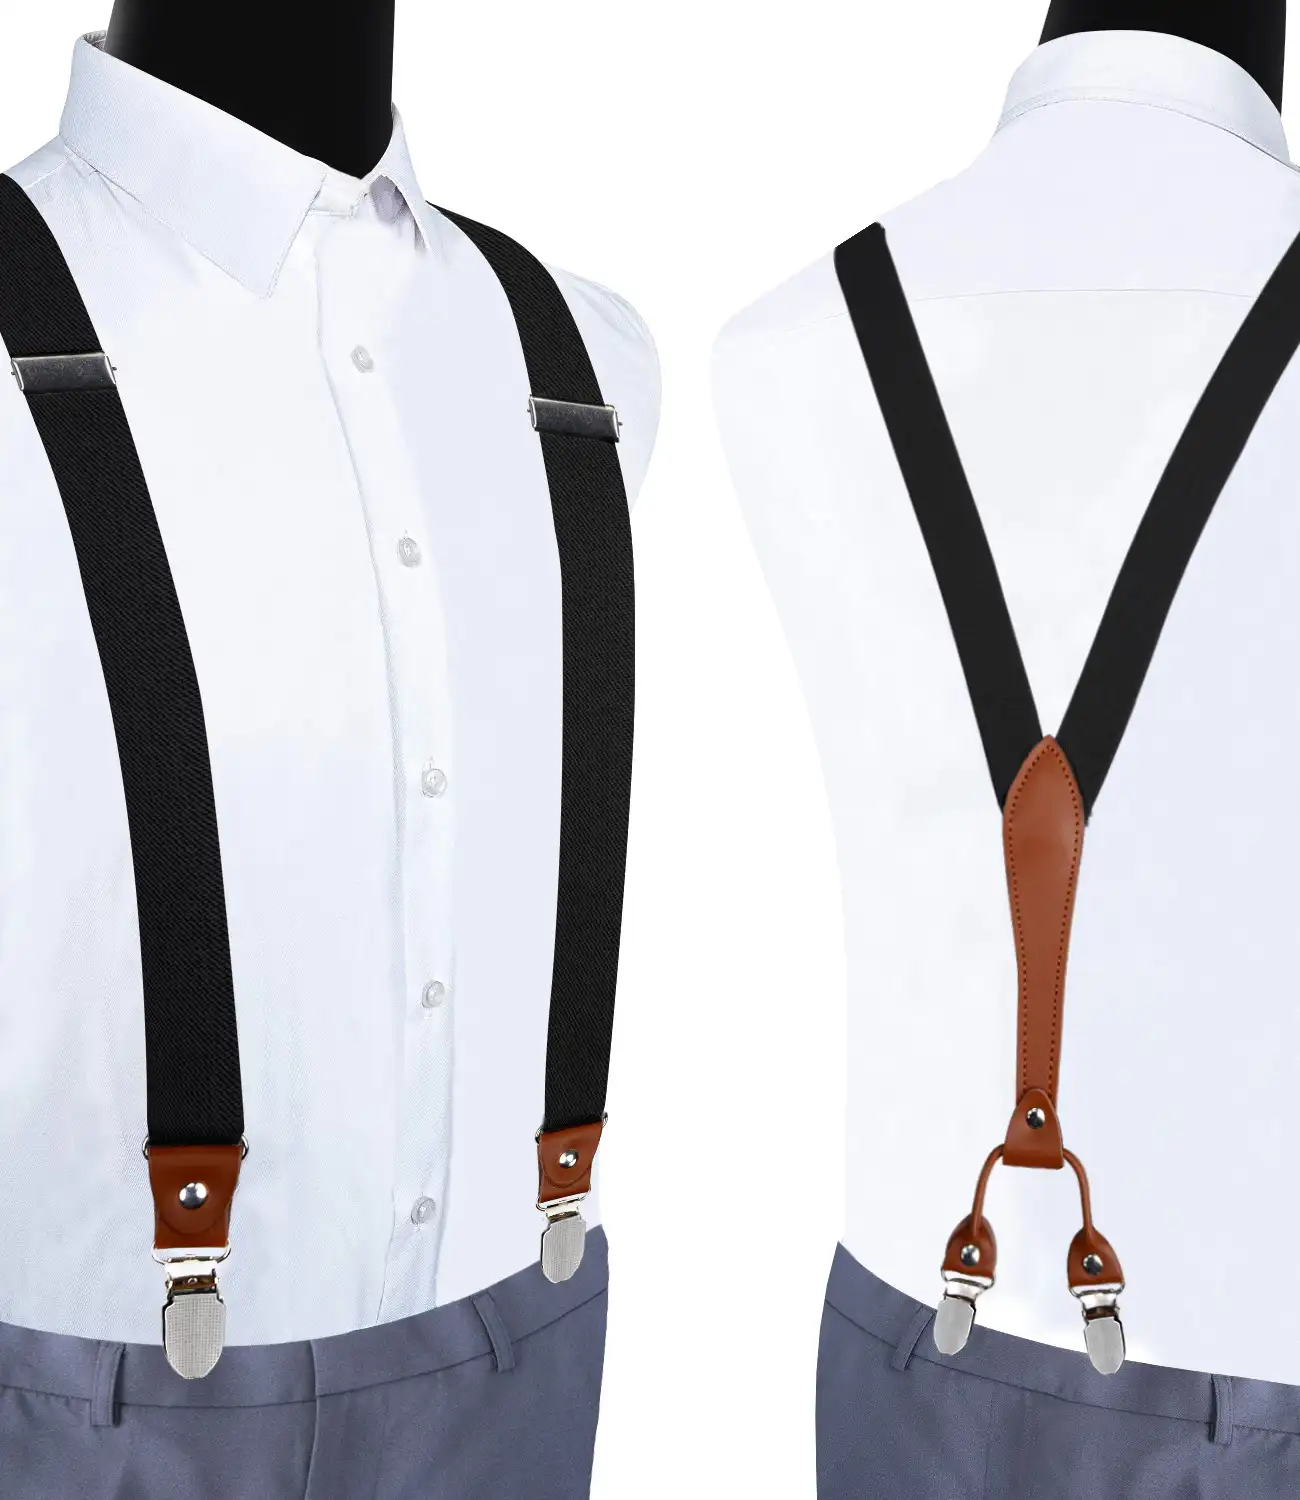 Men's 3.5cm Adjustable Straight Clip Suspender Brace Solid Color X Back Suspenders for Adult Men